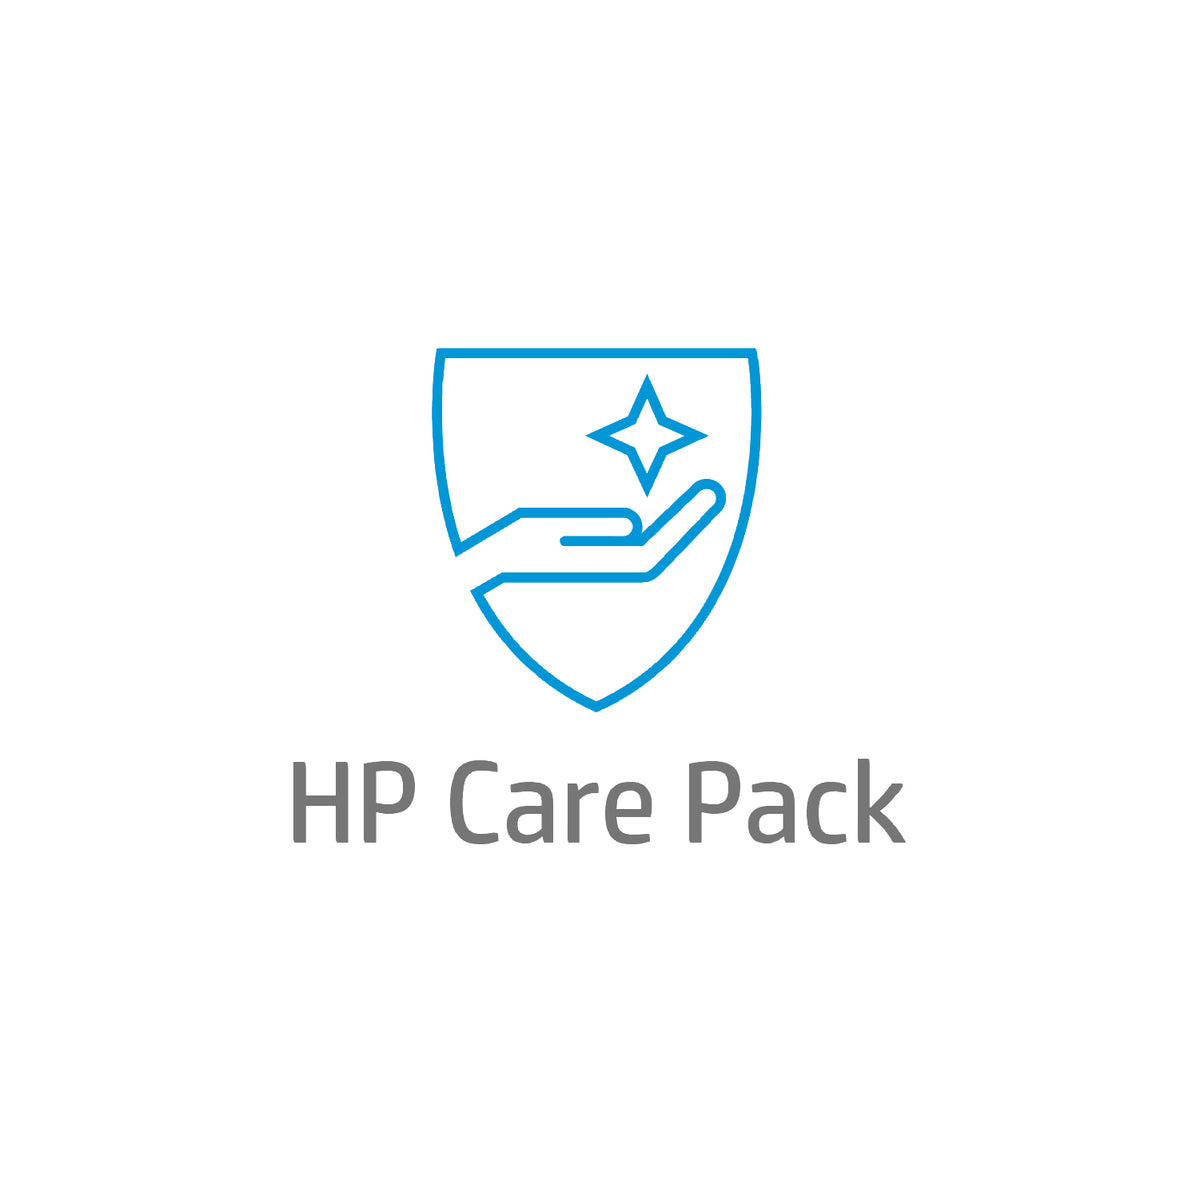 Soporte electrónico de hardware HP Care Pack al siguiente día laborable con retención de soportes defectuosos - Acuerdo de servicio ampliado - piezas y mano de obra - 4 años - in situ - 9x5 - tiempo de respuesta: NBD - para PageWide Color 755dn